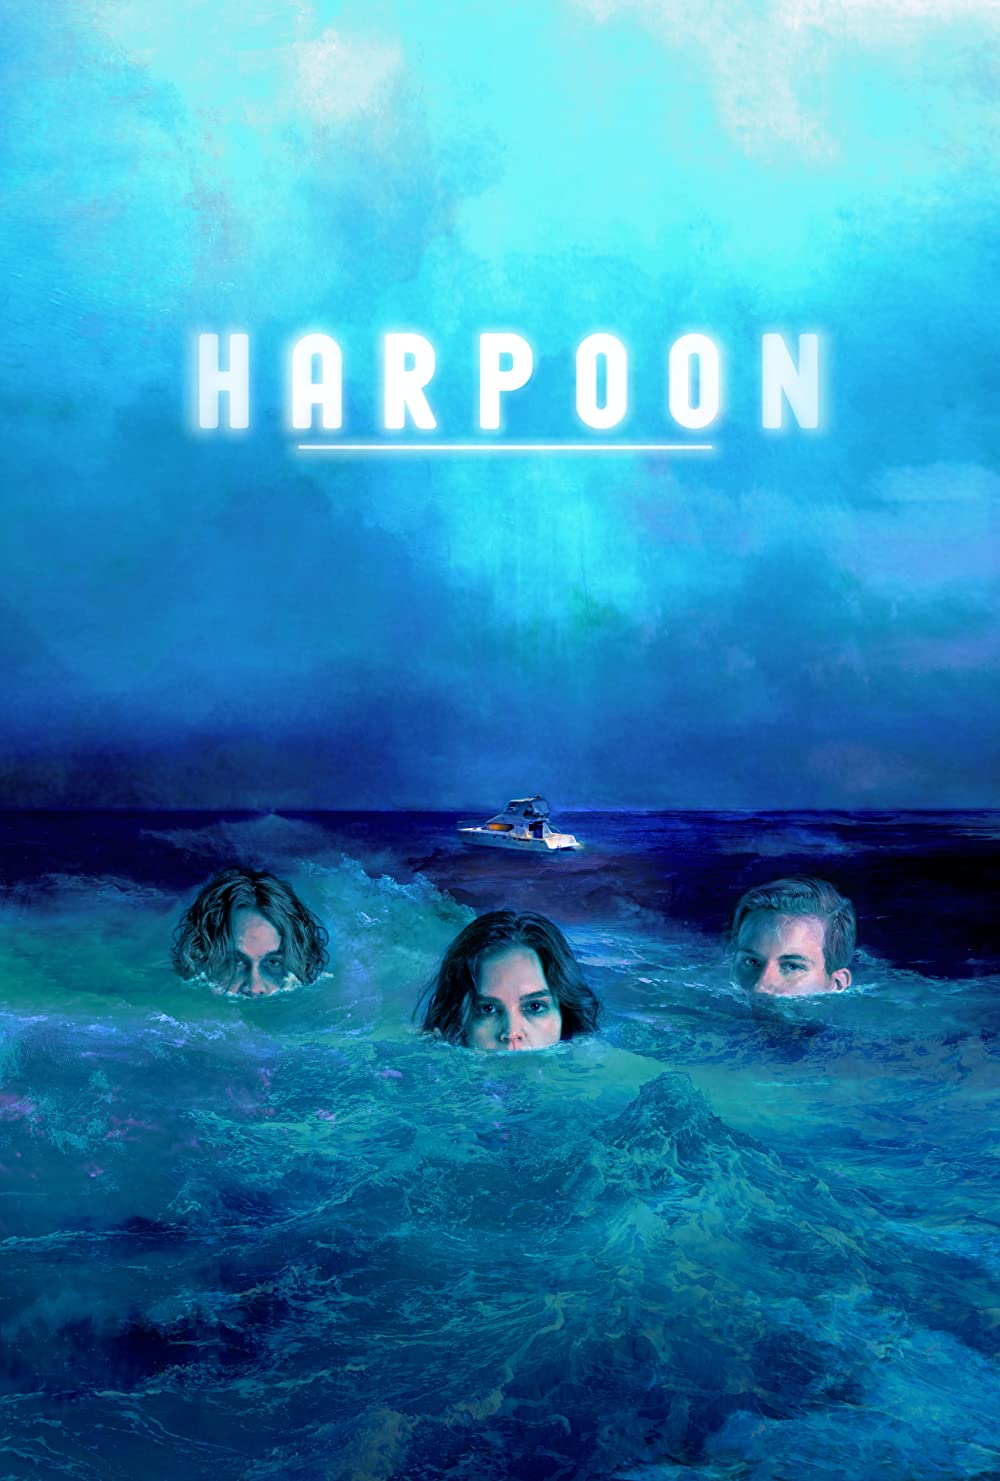 Filmbeschreibung zu Harpoon (OV)